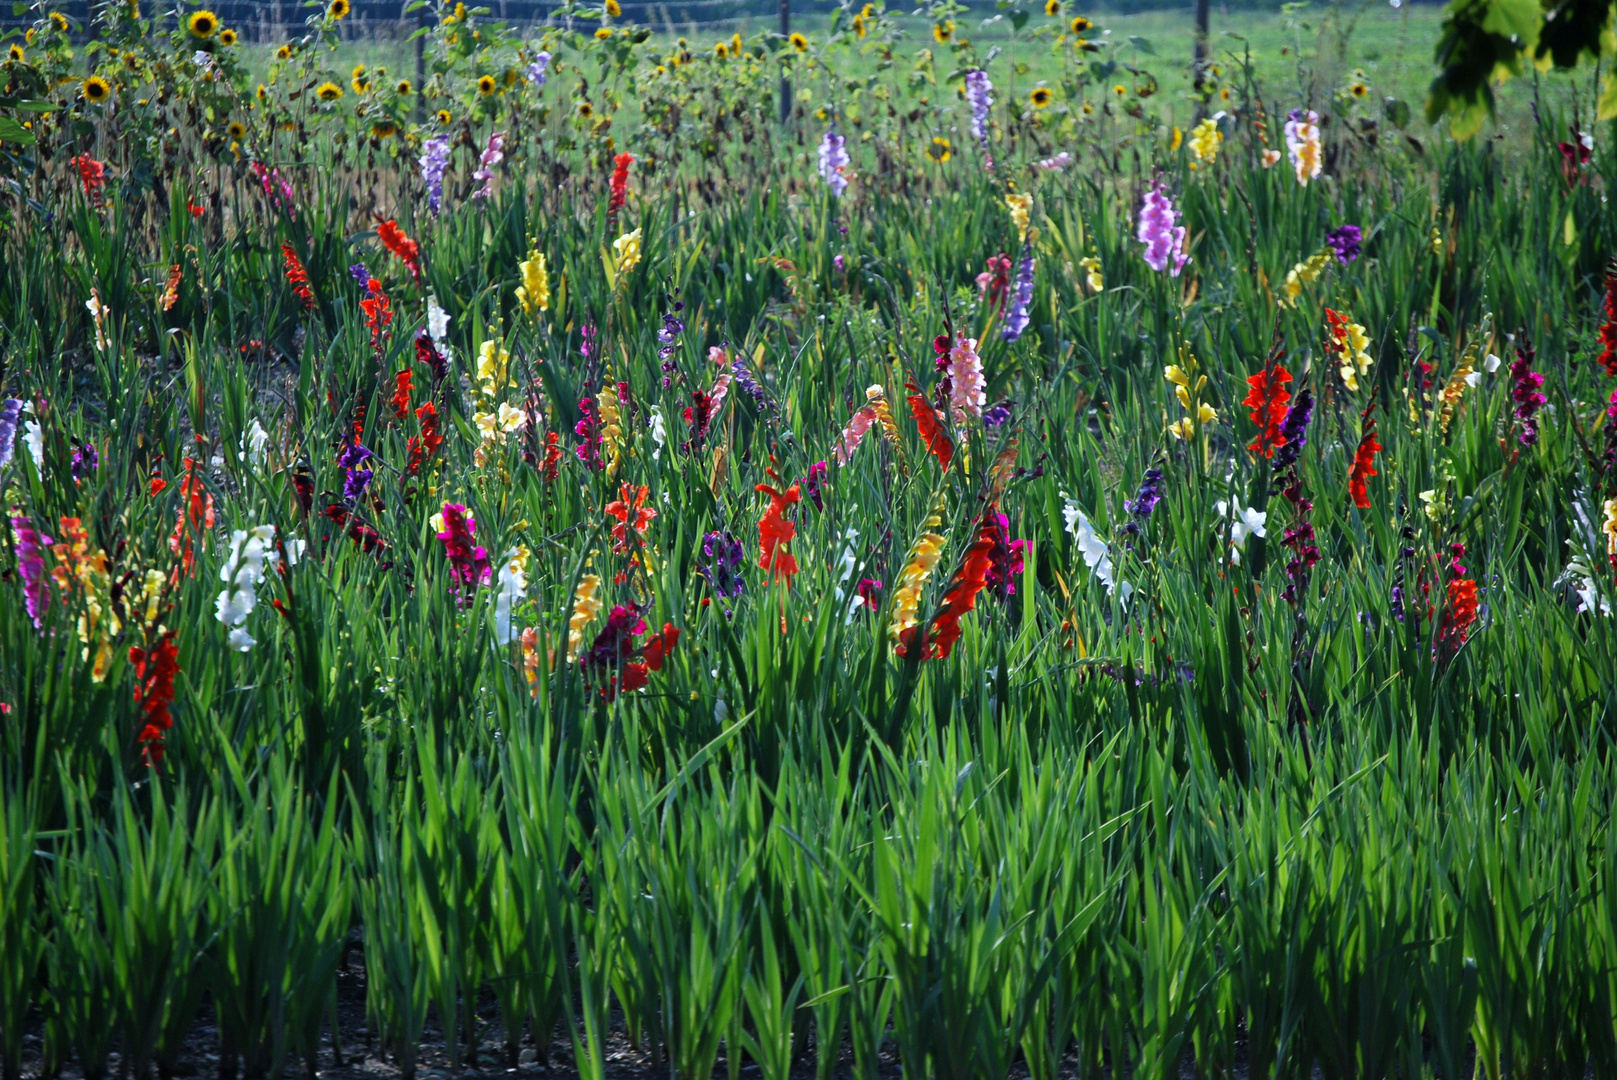 Campo di fiori Foto % Immagini| piante, fiori e funghi ...